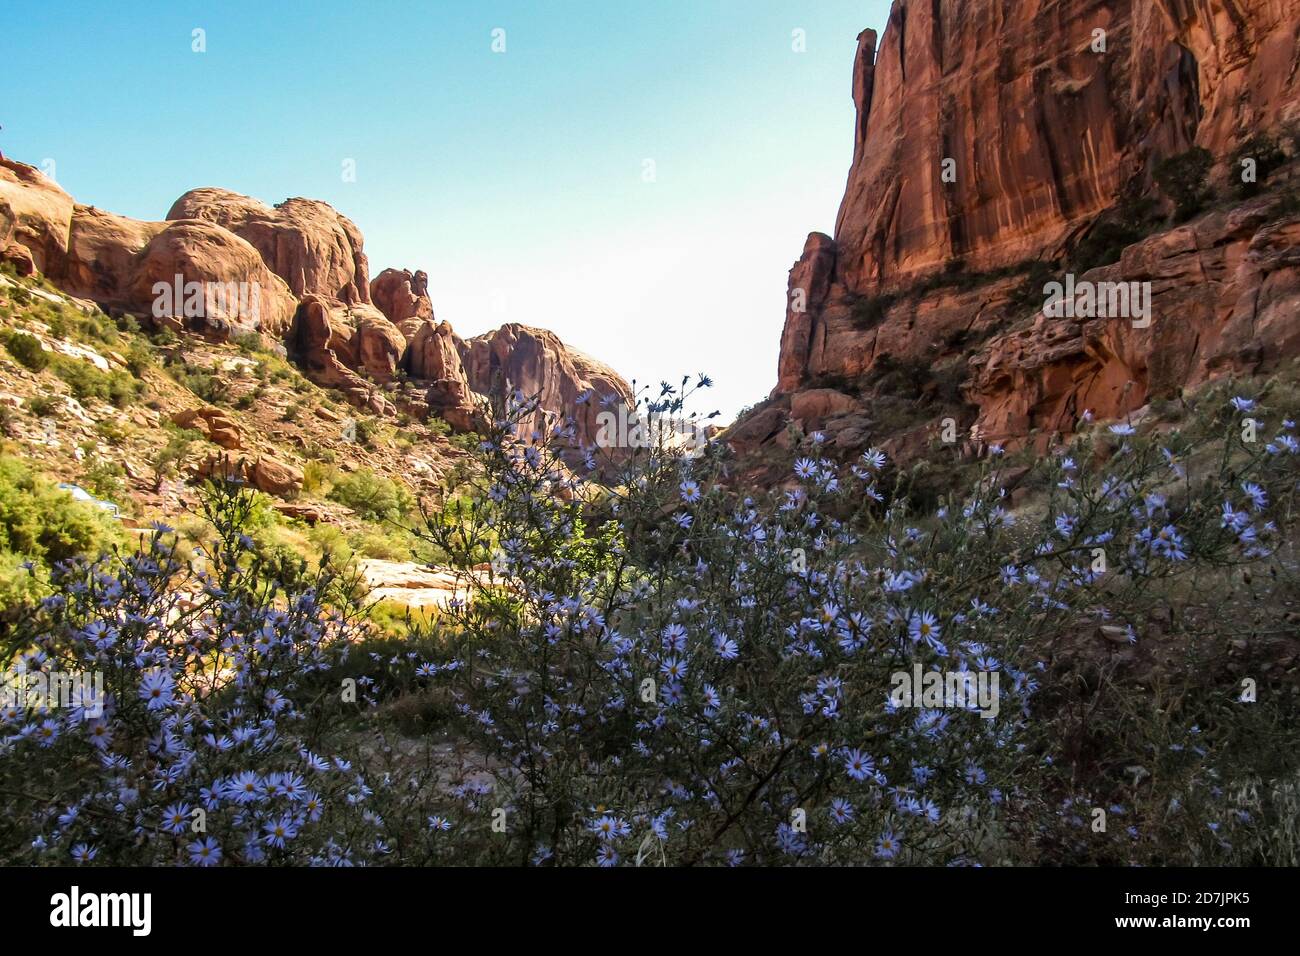 Vista a bordo strada delle scogliere di arenaria all'estremità occidentale della valle del castello, con fiori selvatici in alta stagione in primo piano, fotografati nello Utah, USA Foto Stock